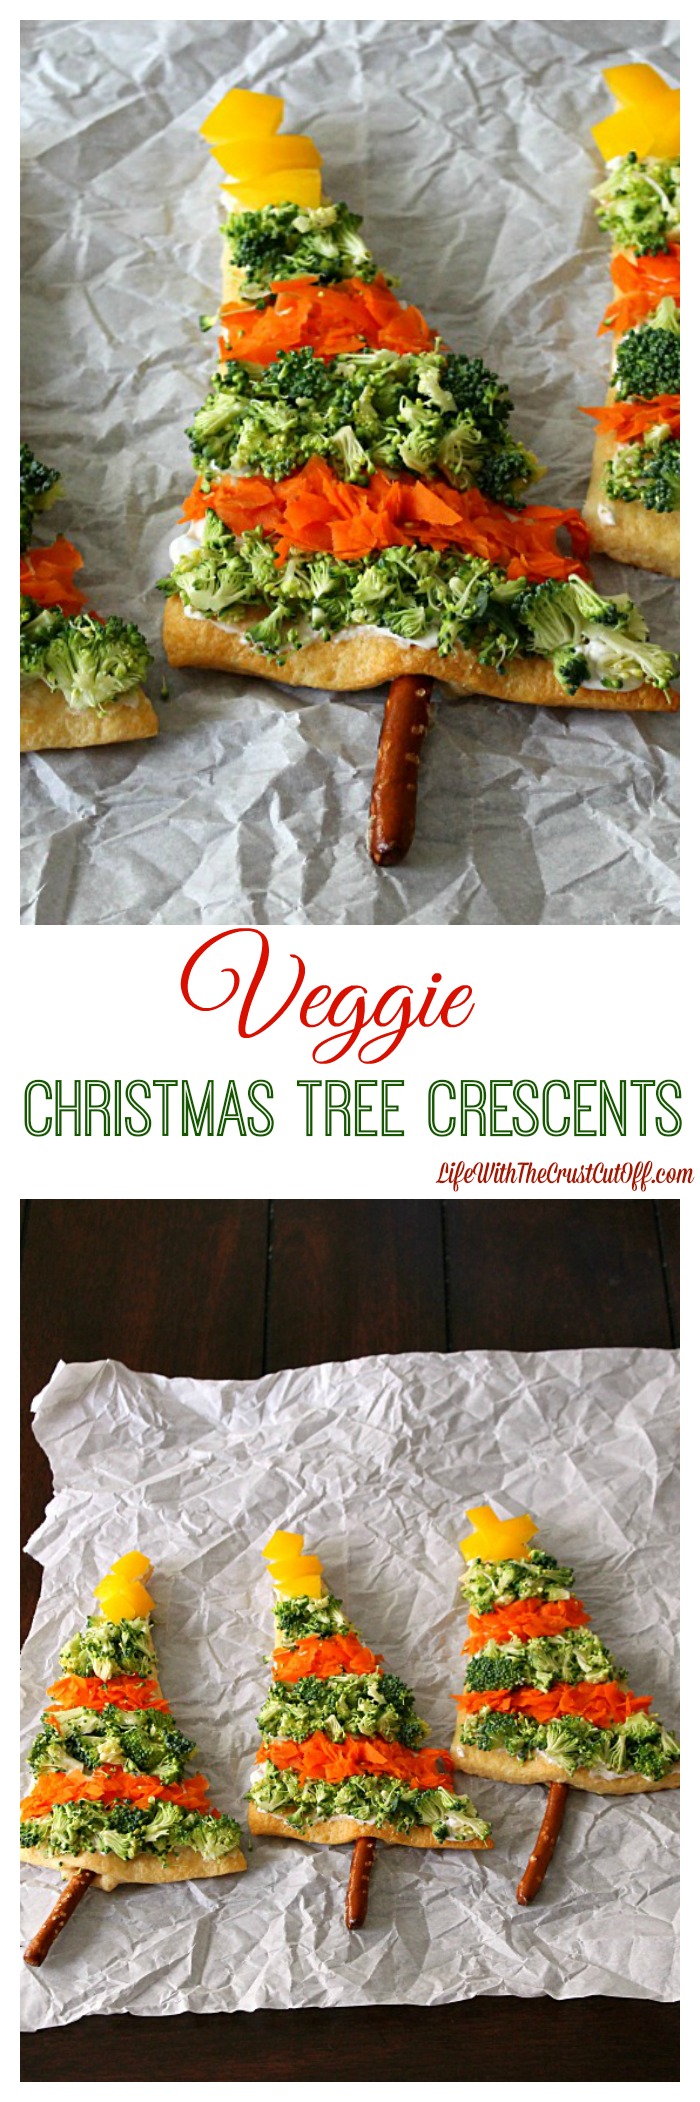 Christmas Veggie Tree, Holiday veggie tree recipe